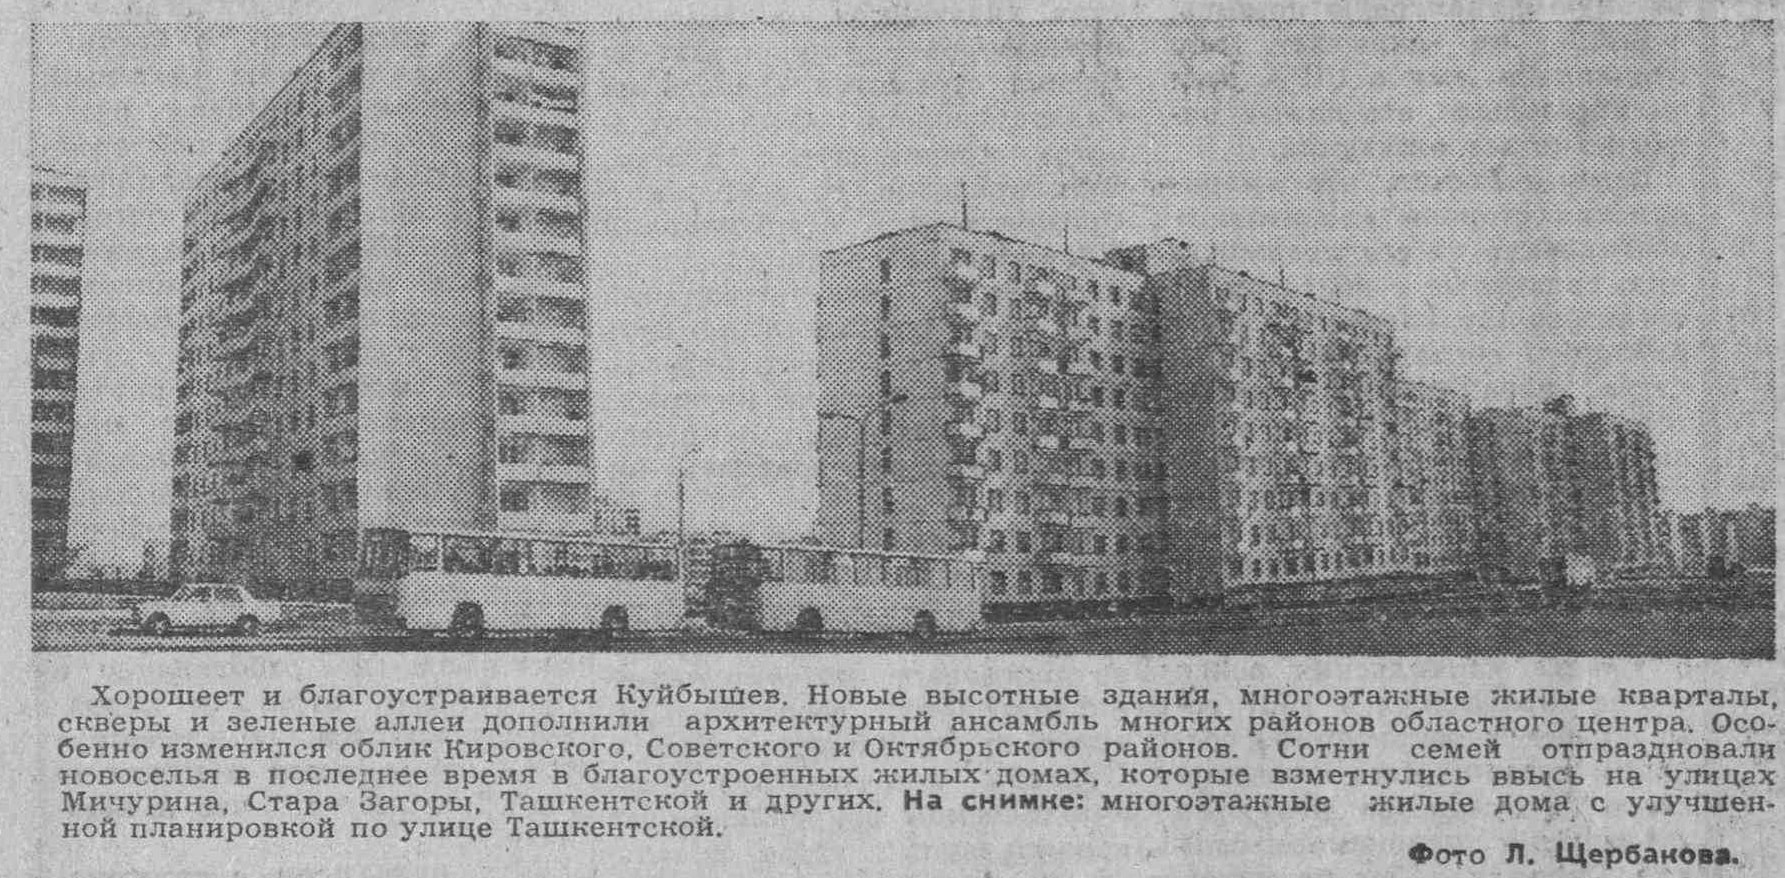 Ташкентская-ФОТО-63-ВКа-1978-05-07-фото с ул. Ташкентской